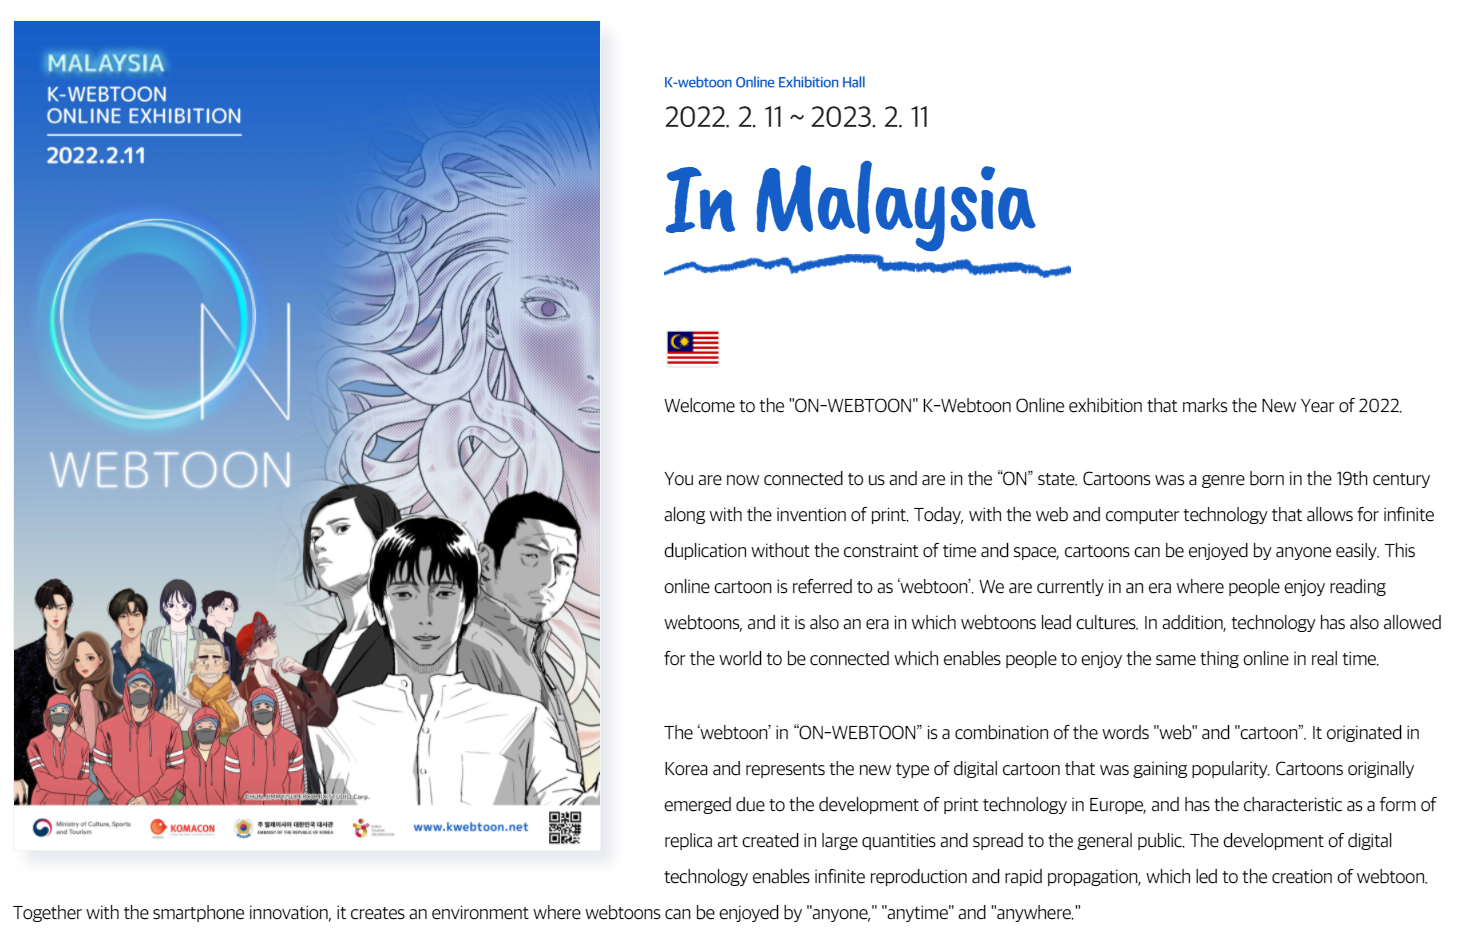 <말레이시아에서 열린 첫 한국 웹툰 온라인 전시 설명 - 출처: K-웹툰 공식 홈페이지>